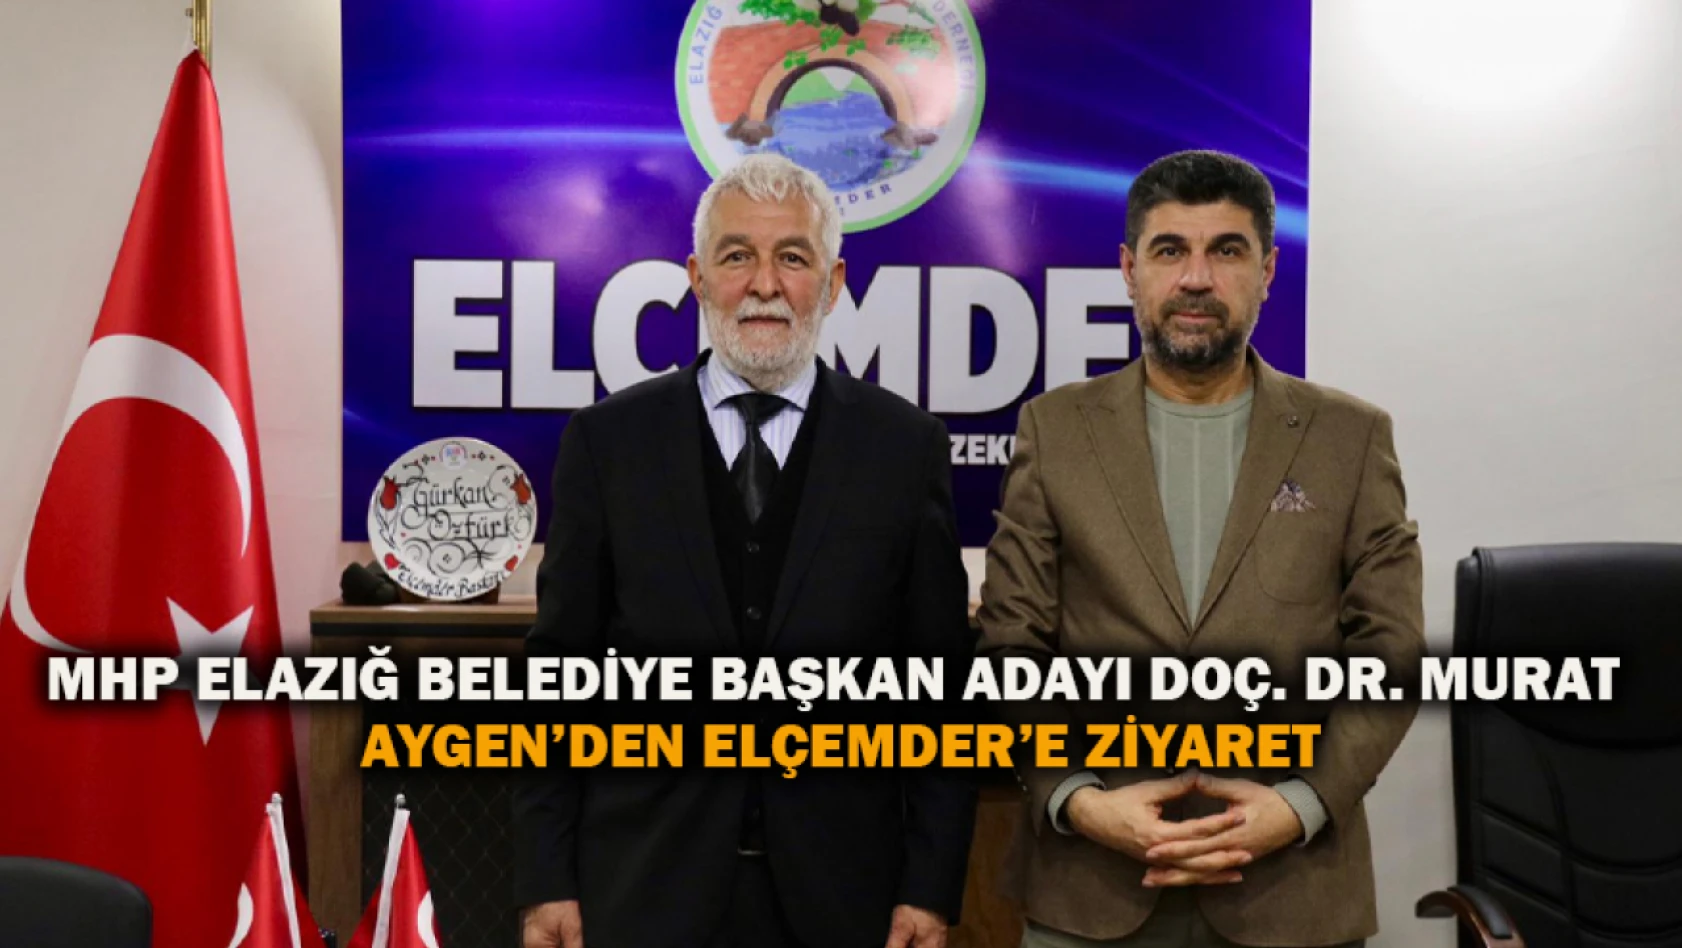 MHP Elazığ Belediye Başkan Adayı Doç. Dr. Murat Aygen'den ELÇEMDER'e Ziyaret